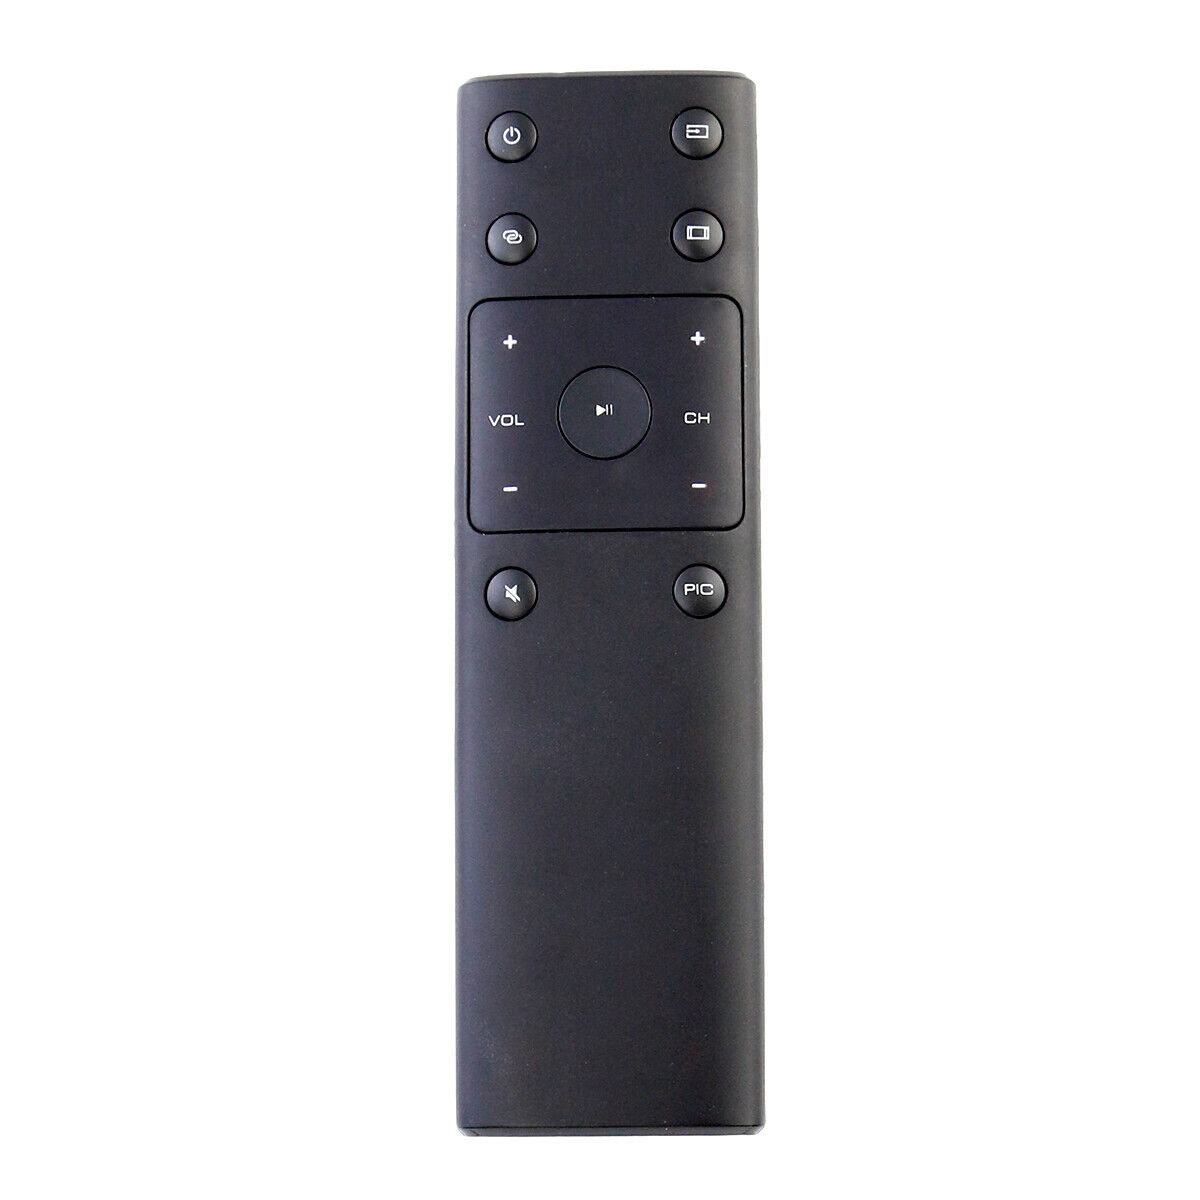 New XRT132 TV Remote for Vizio D40U-D1 E32-D1 E40-D0 M50-D1 M55-D0 M70-D3 P75-C1 - $14.99